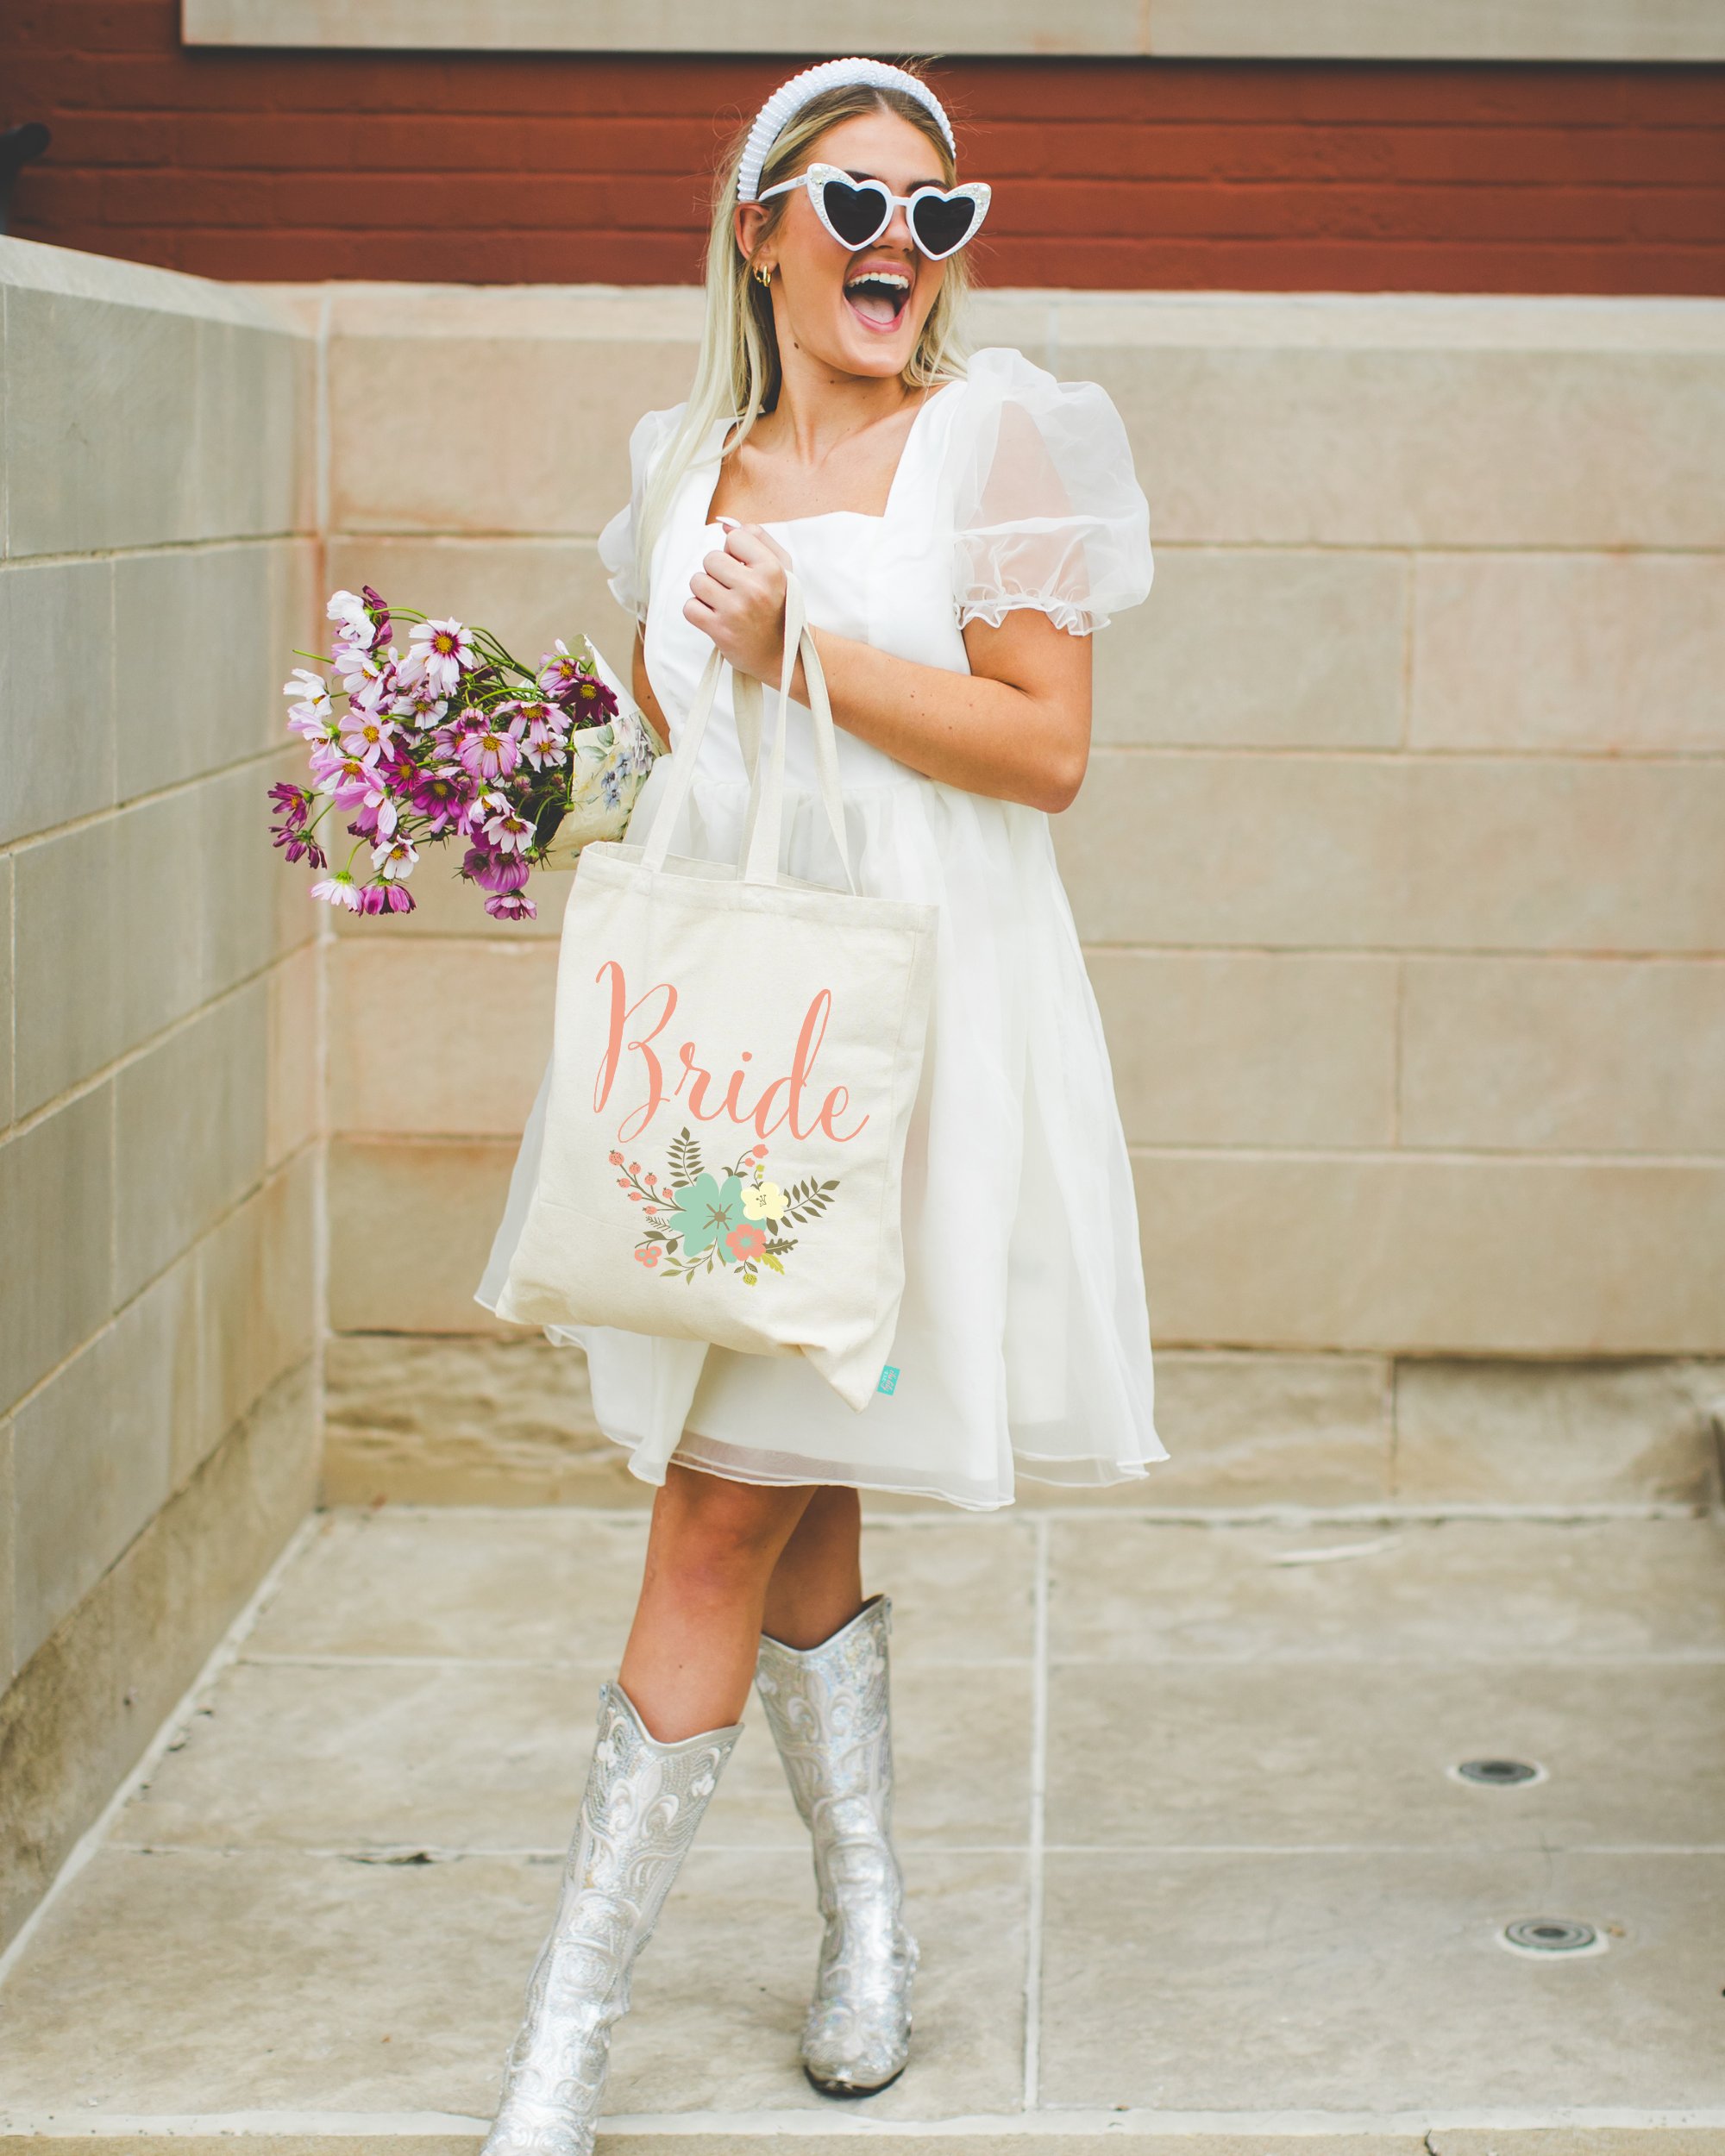 Bride Tote Bag | Floral